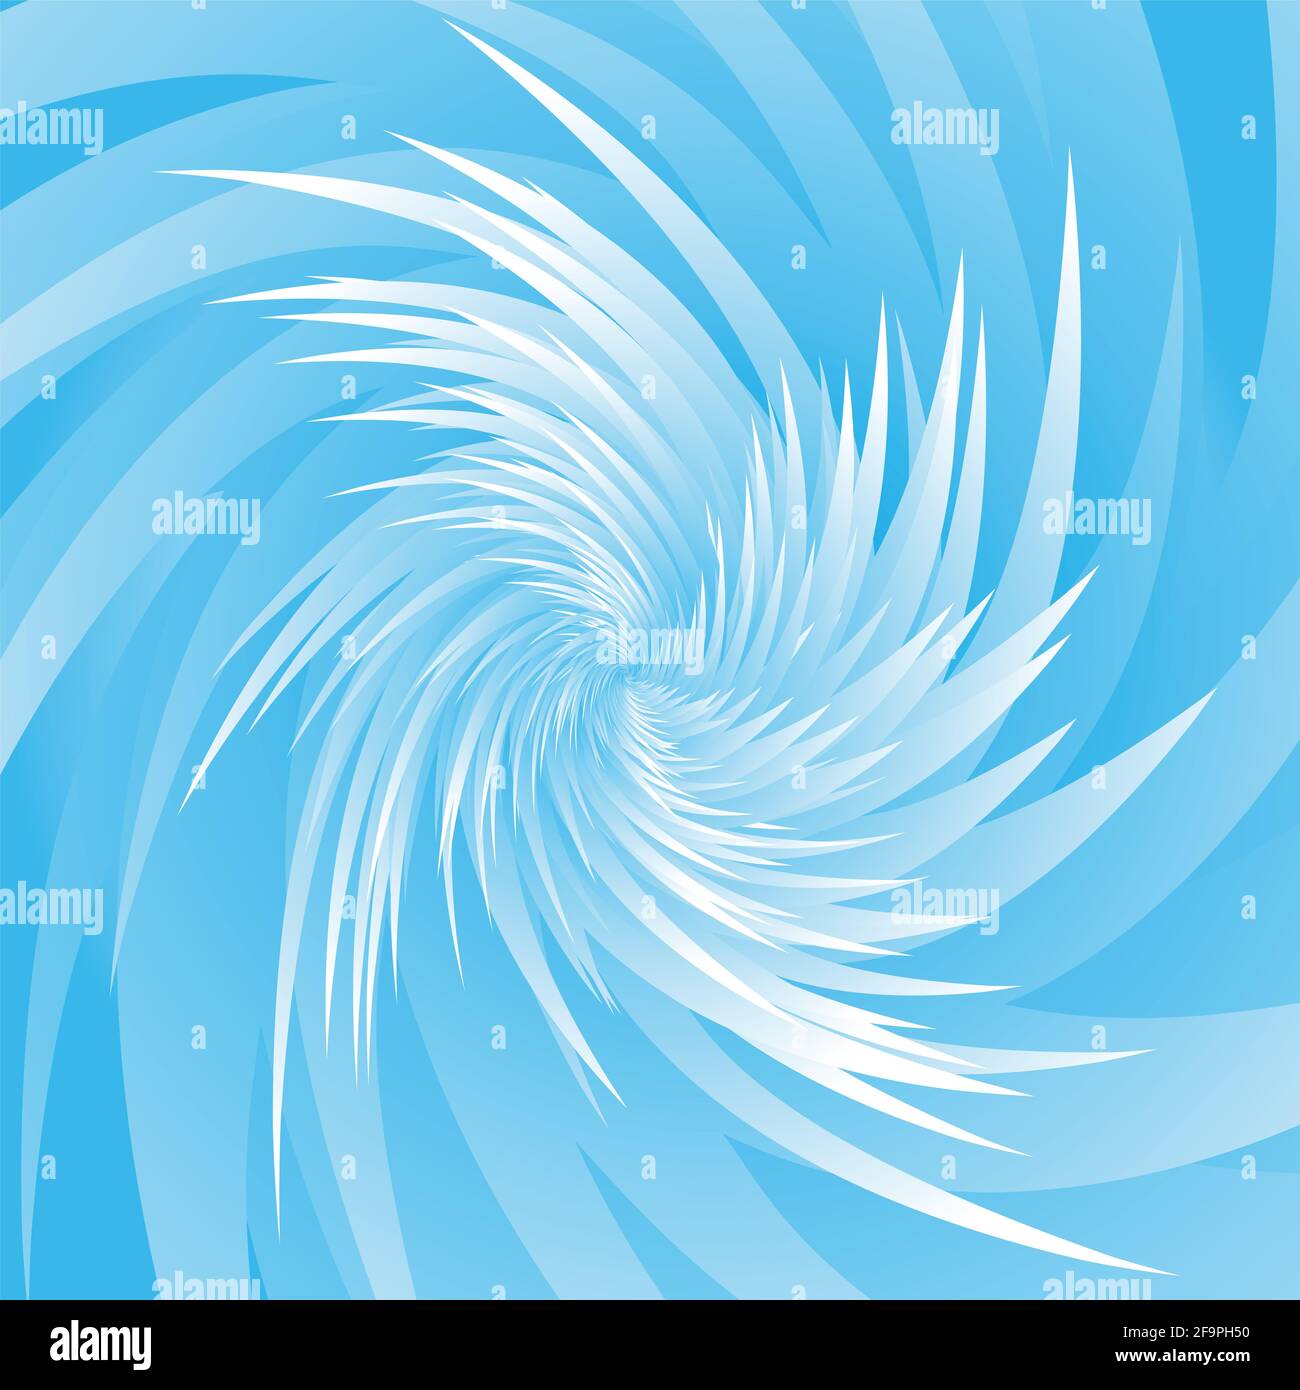 Ice thorns spiral, blue and white frozen spiky peak pattern, explosive wild winter spiral. Stock Photo